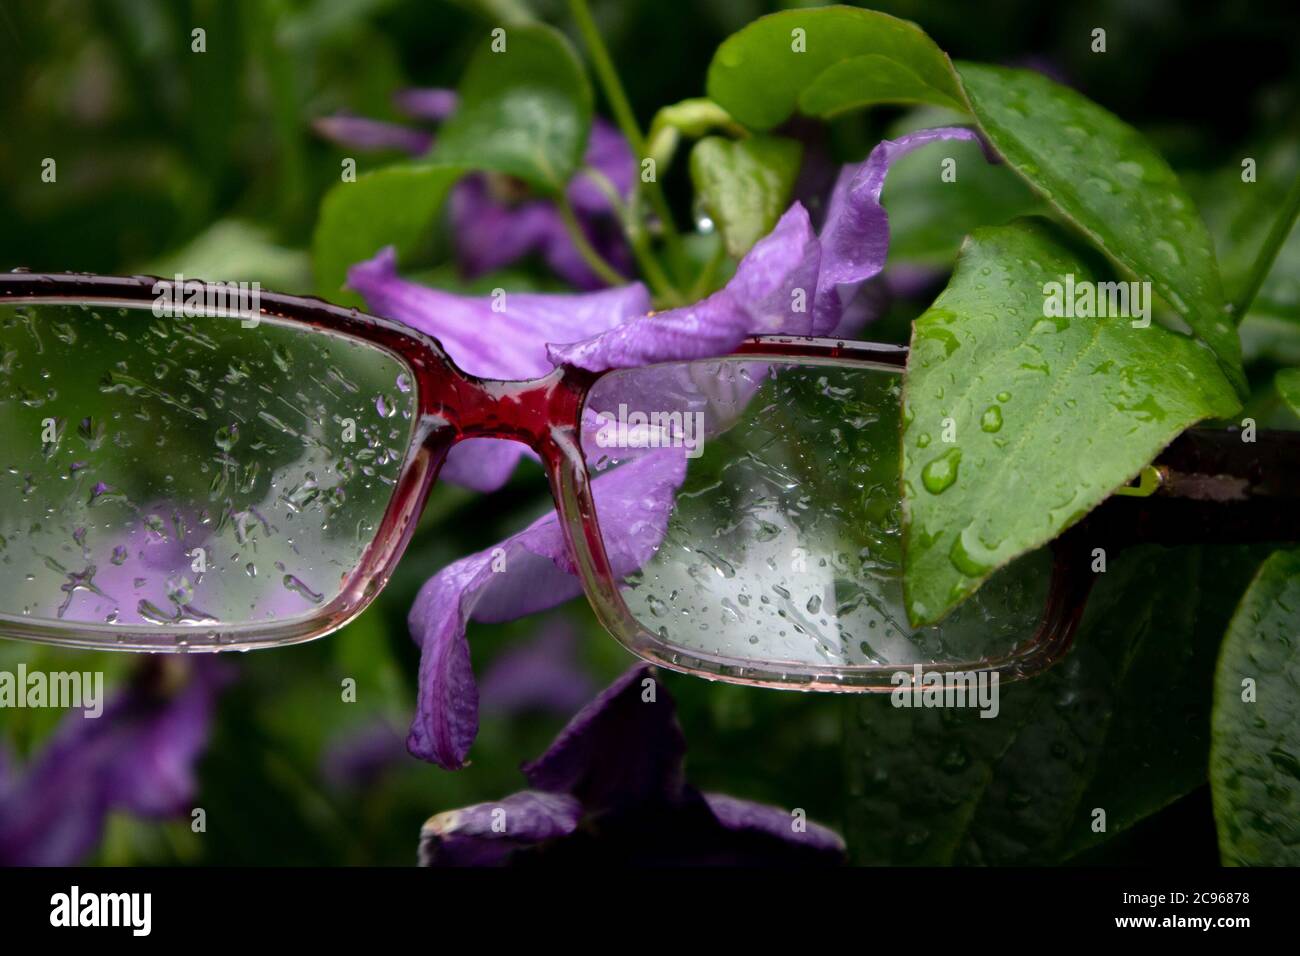 Gafas con gotas de lluvia colgando en el arbusto clematis con follaje húmedo y flor violeta Foto de stock